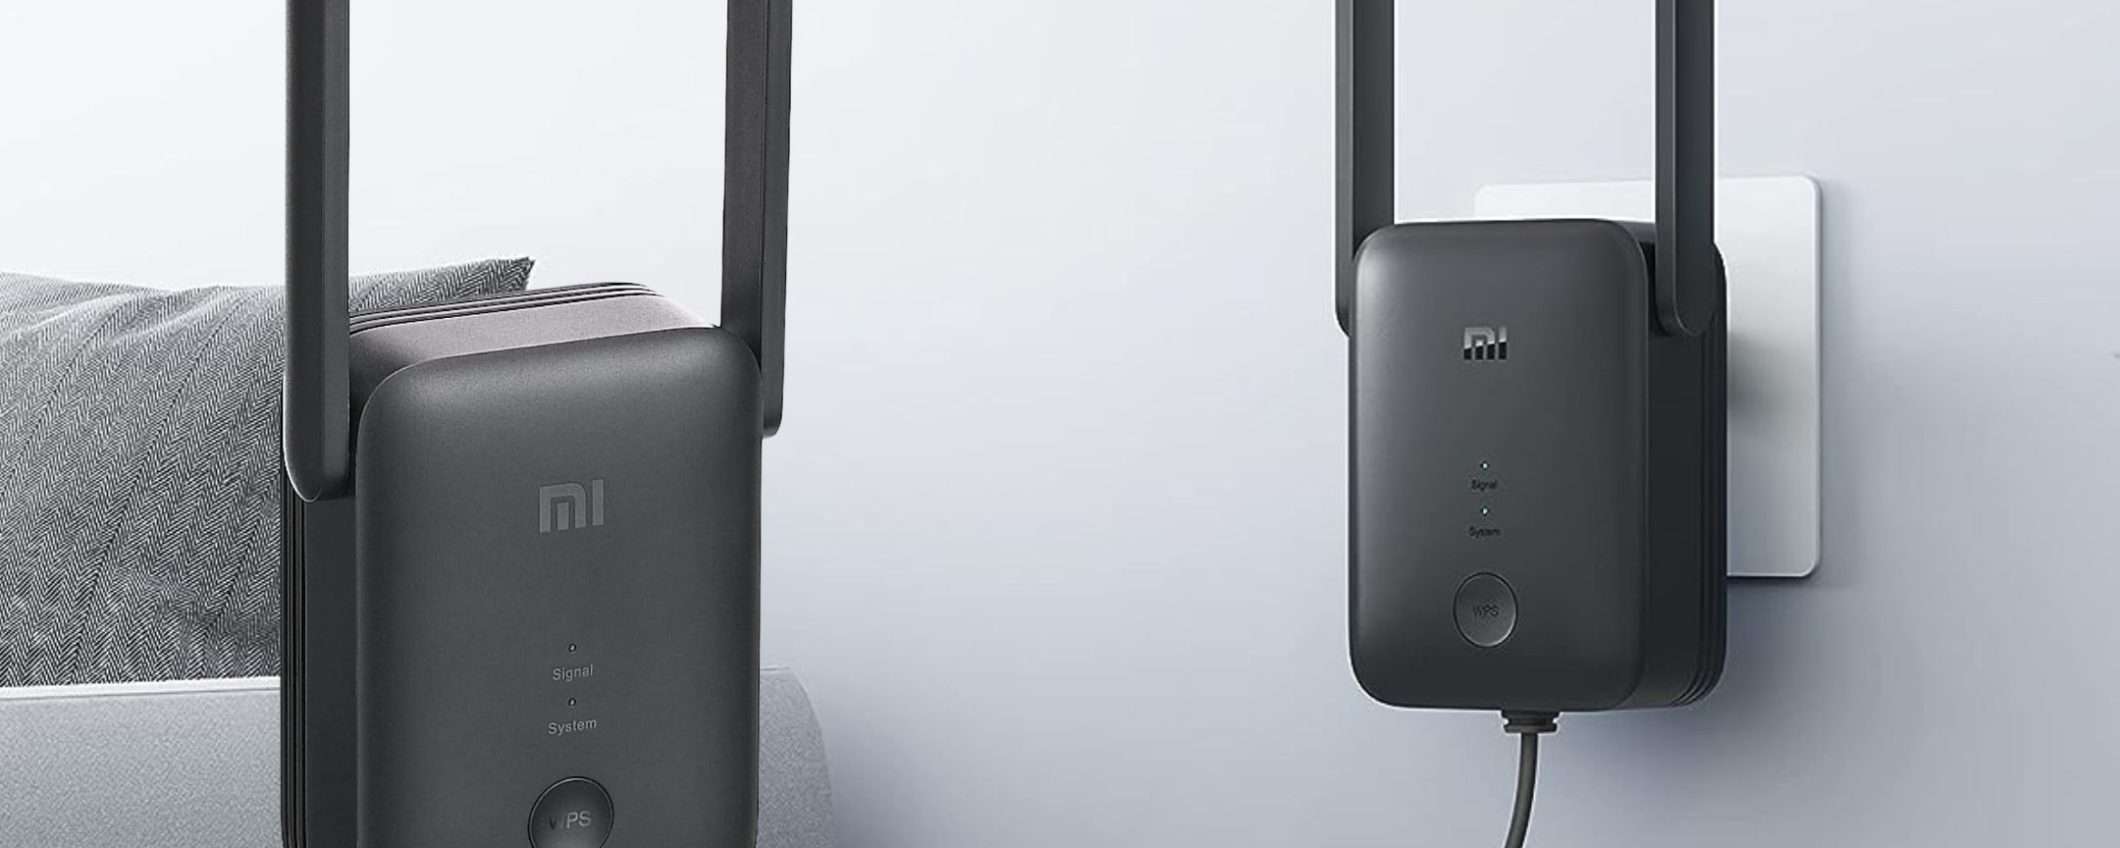 Xiaomi fa MIRACOLI: il WiFi diventa potentissimo con 19€ (solo Amazon)